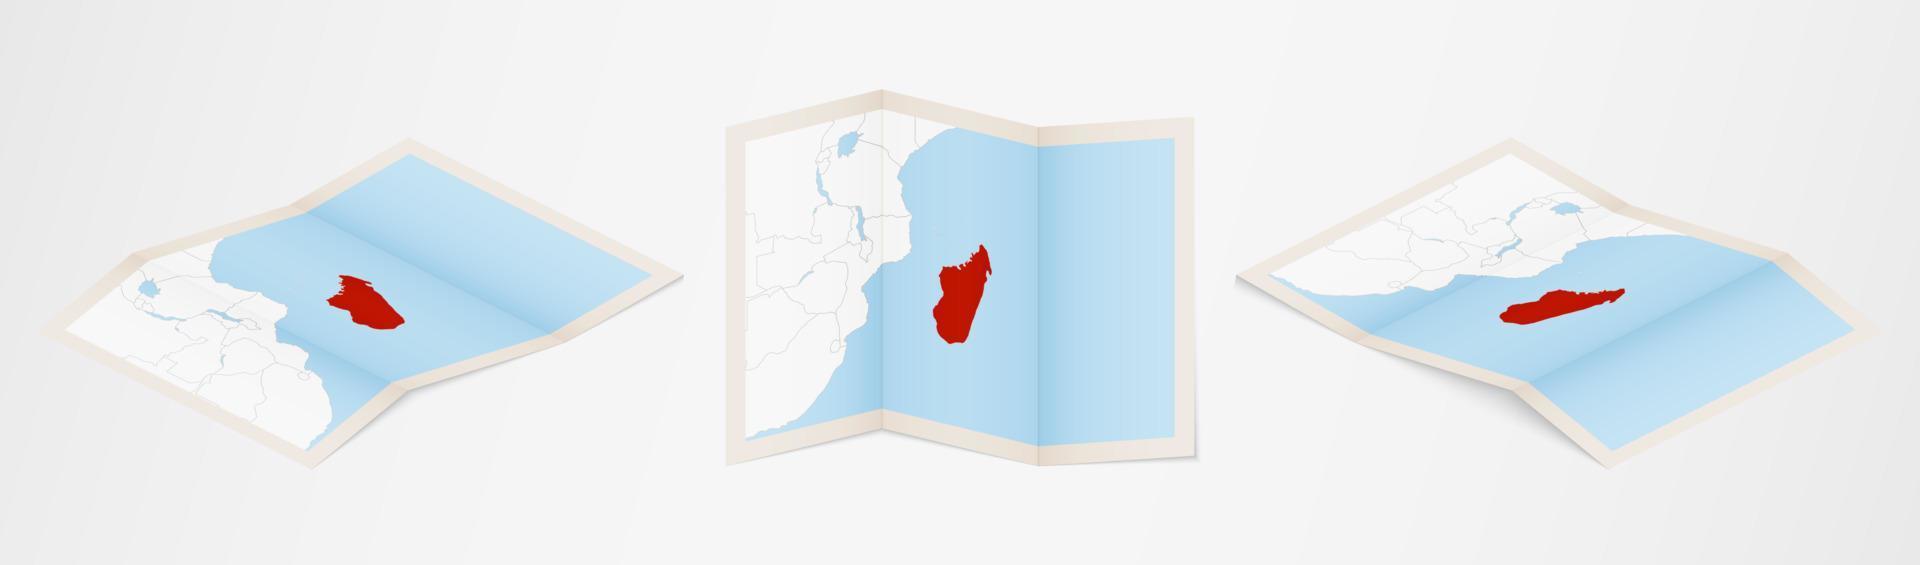 Faltkarte von Madagaskar in drei verschiedenen Versionen. vektor